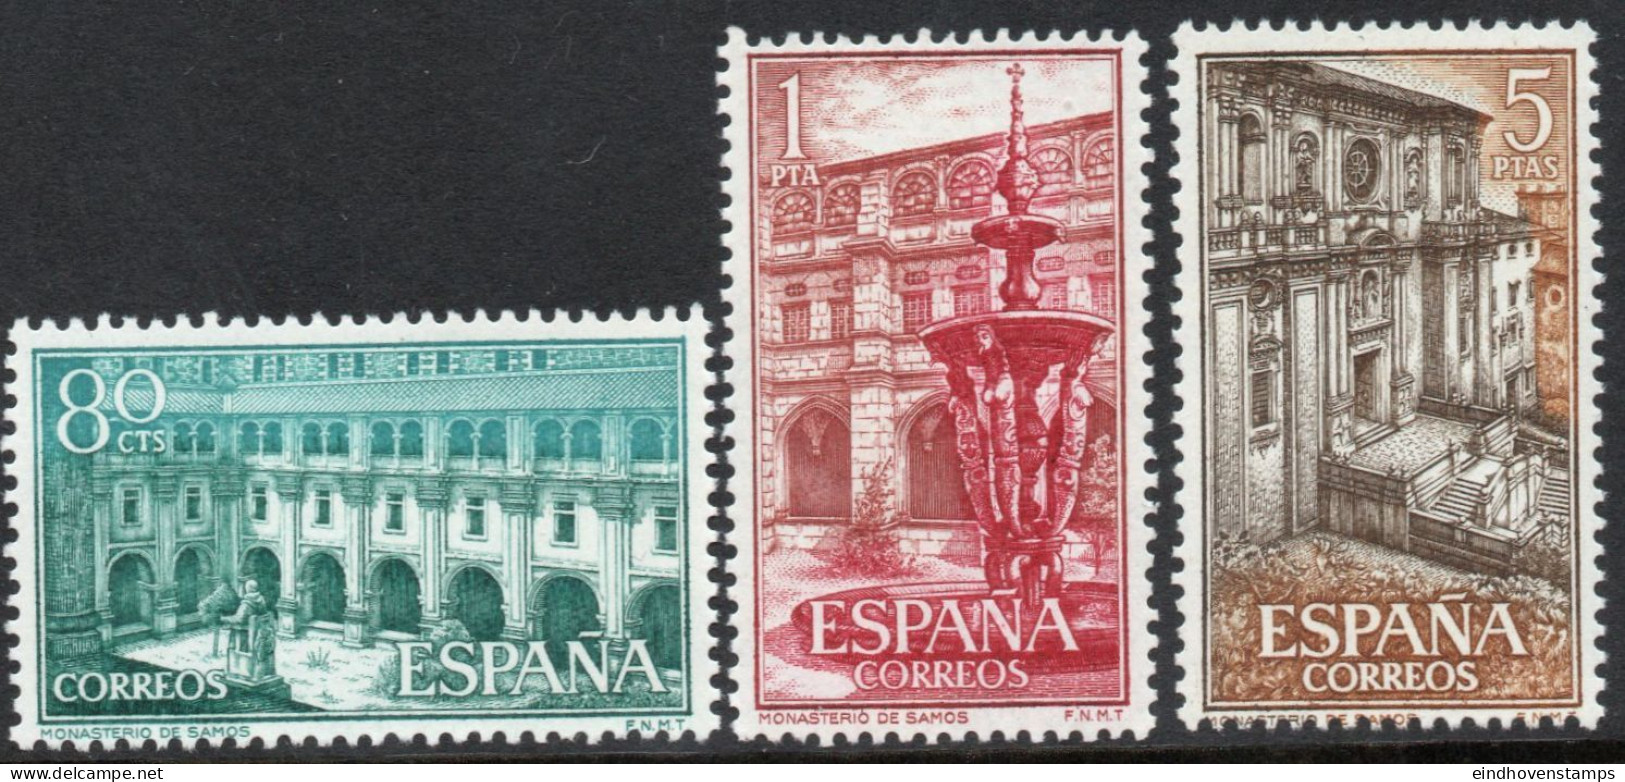 Spain 1960 Cloister Samos 3 Values MNH - Abbeys & Monasteries